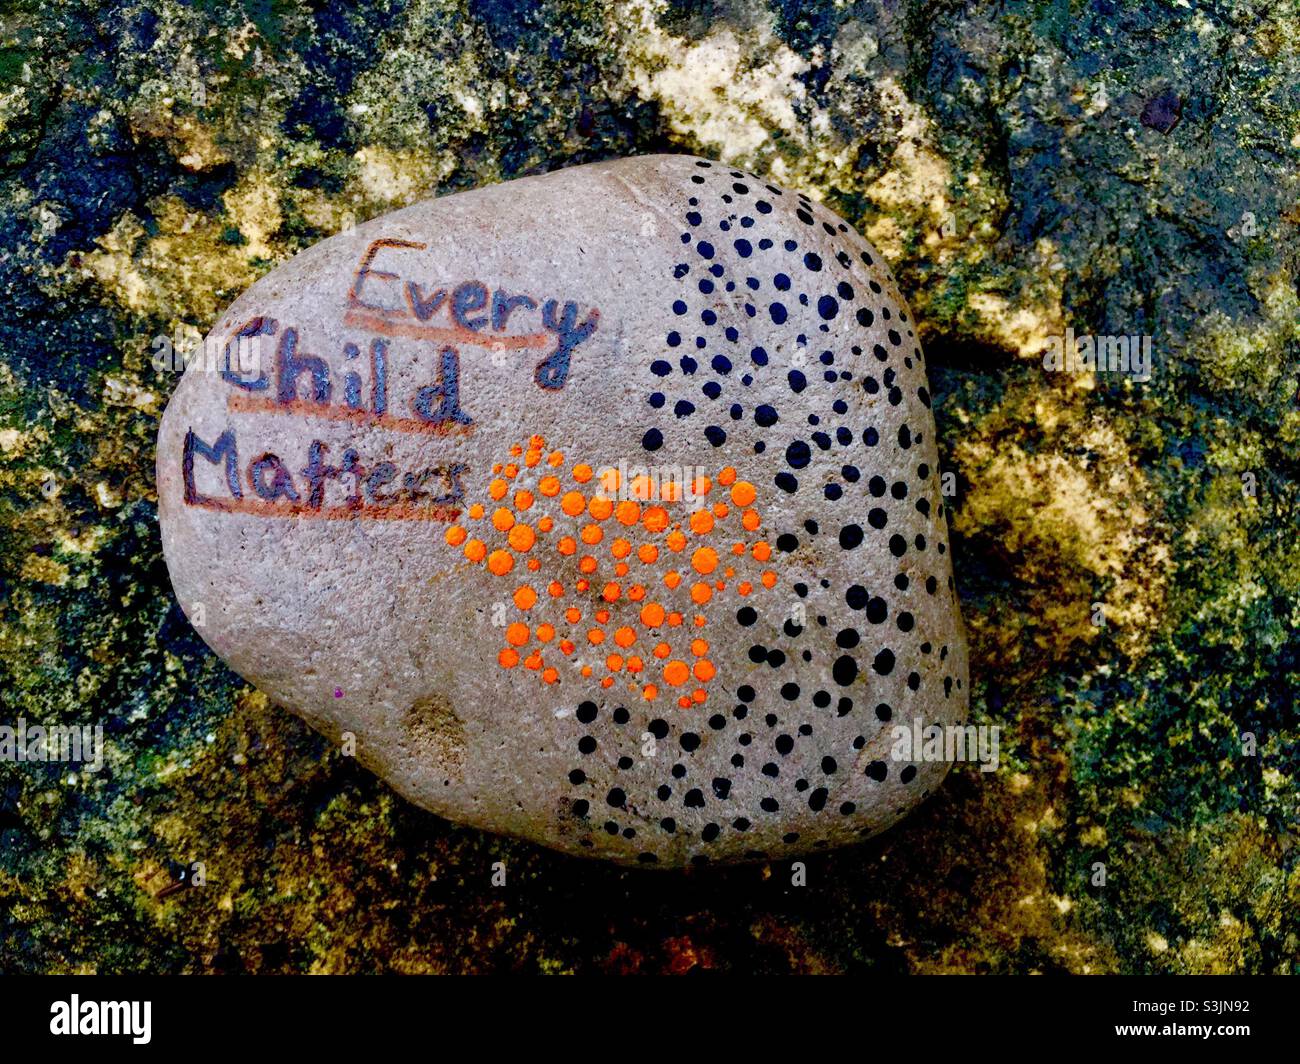 Auf Stein gemalt: Jedes Kind zählt. In Stein gemeißelt. Solides Gestein. Ontario, Kanada. Nachricht. Konzepte: Positiv, positiv, kinderfreundlich. Stockfoto